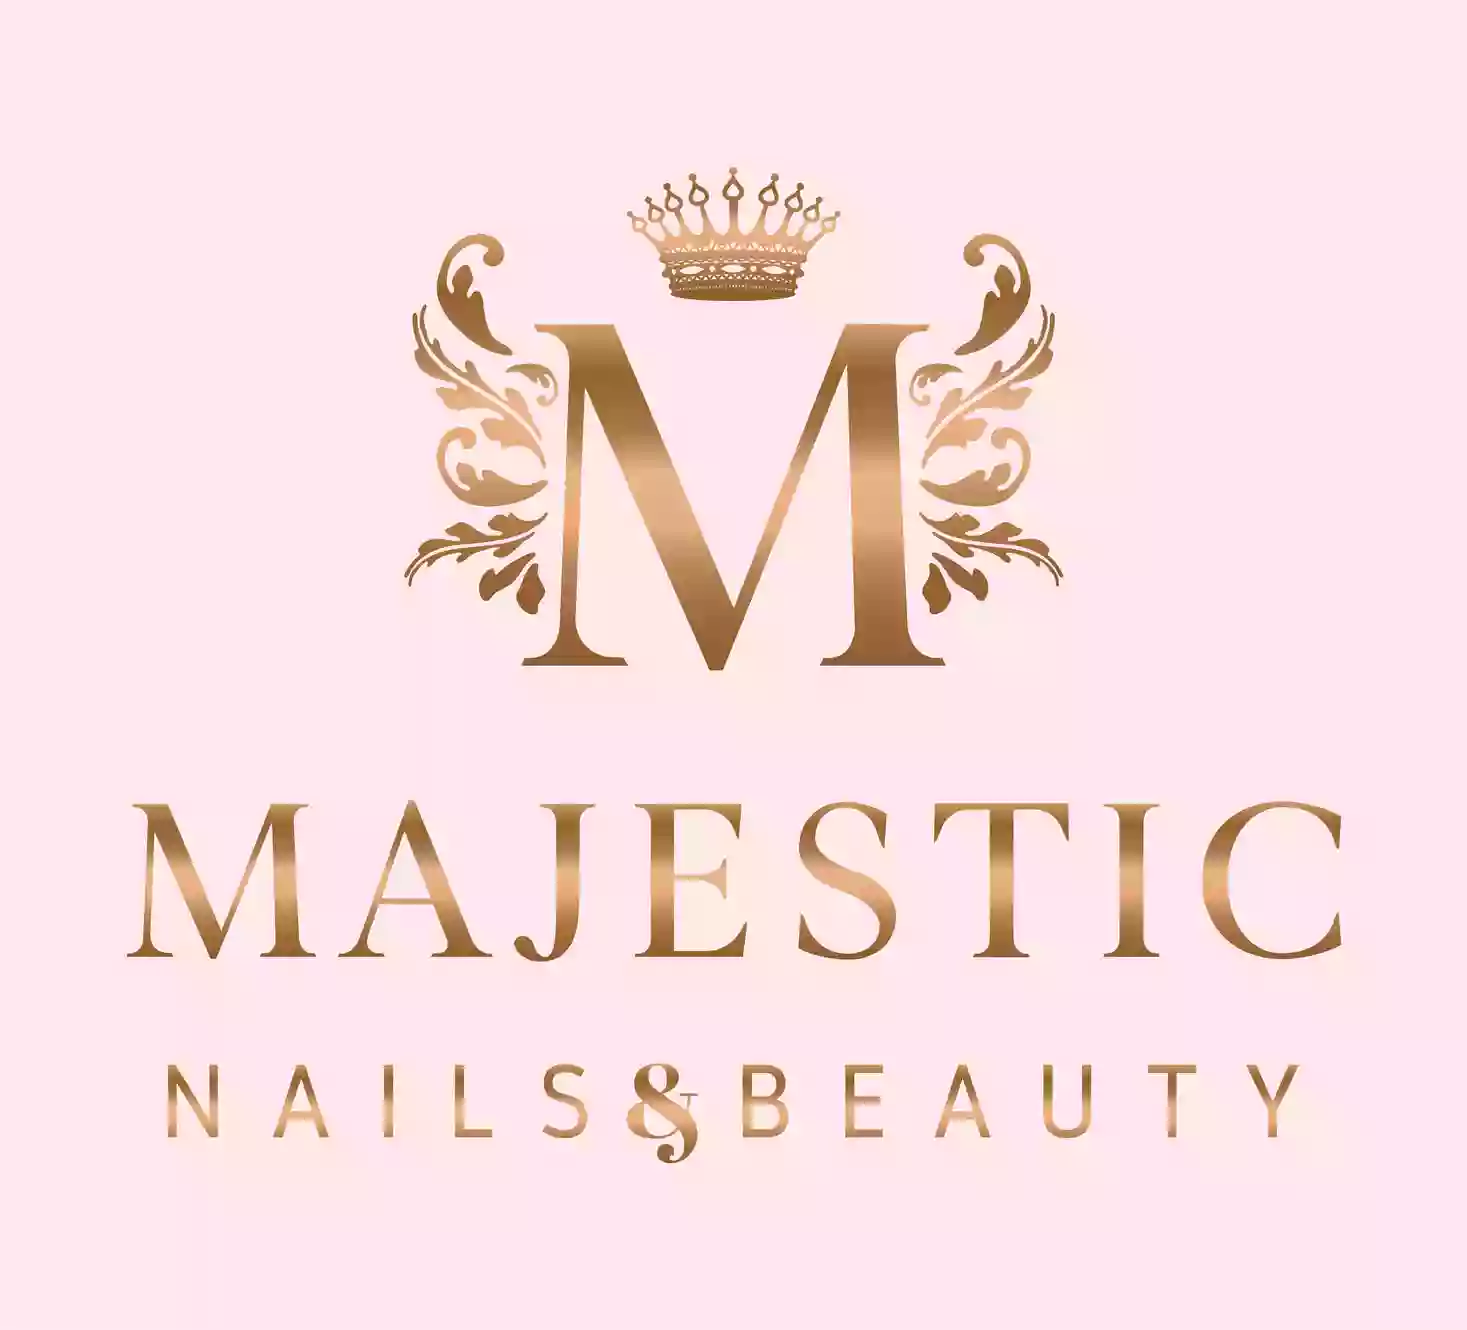 Majestic Nails & Beauty